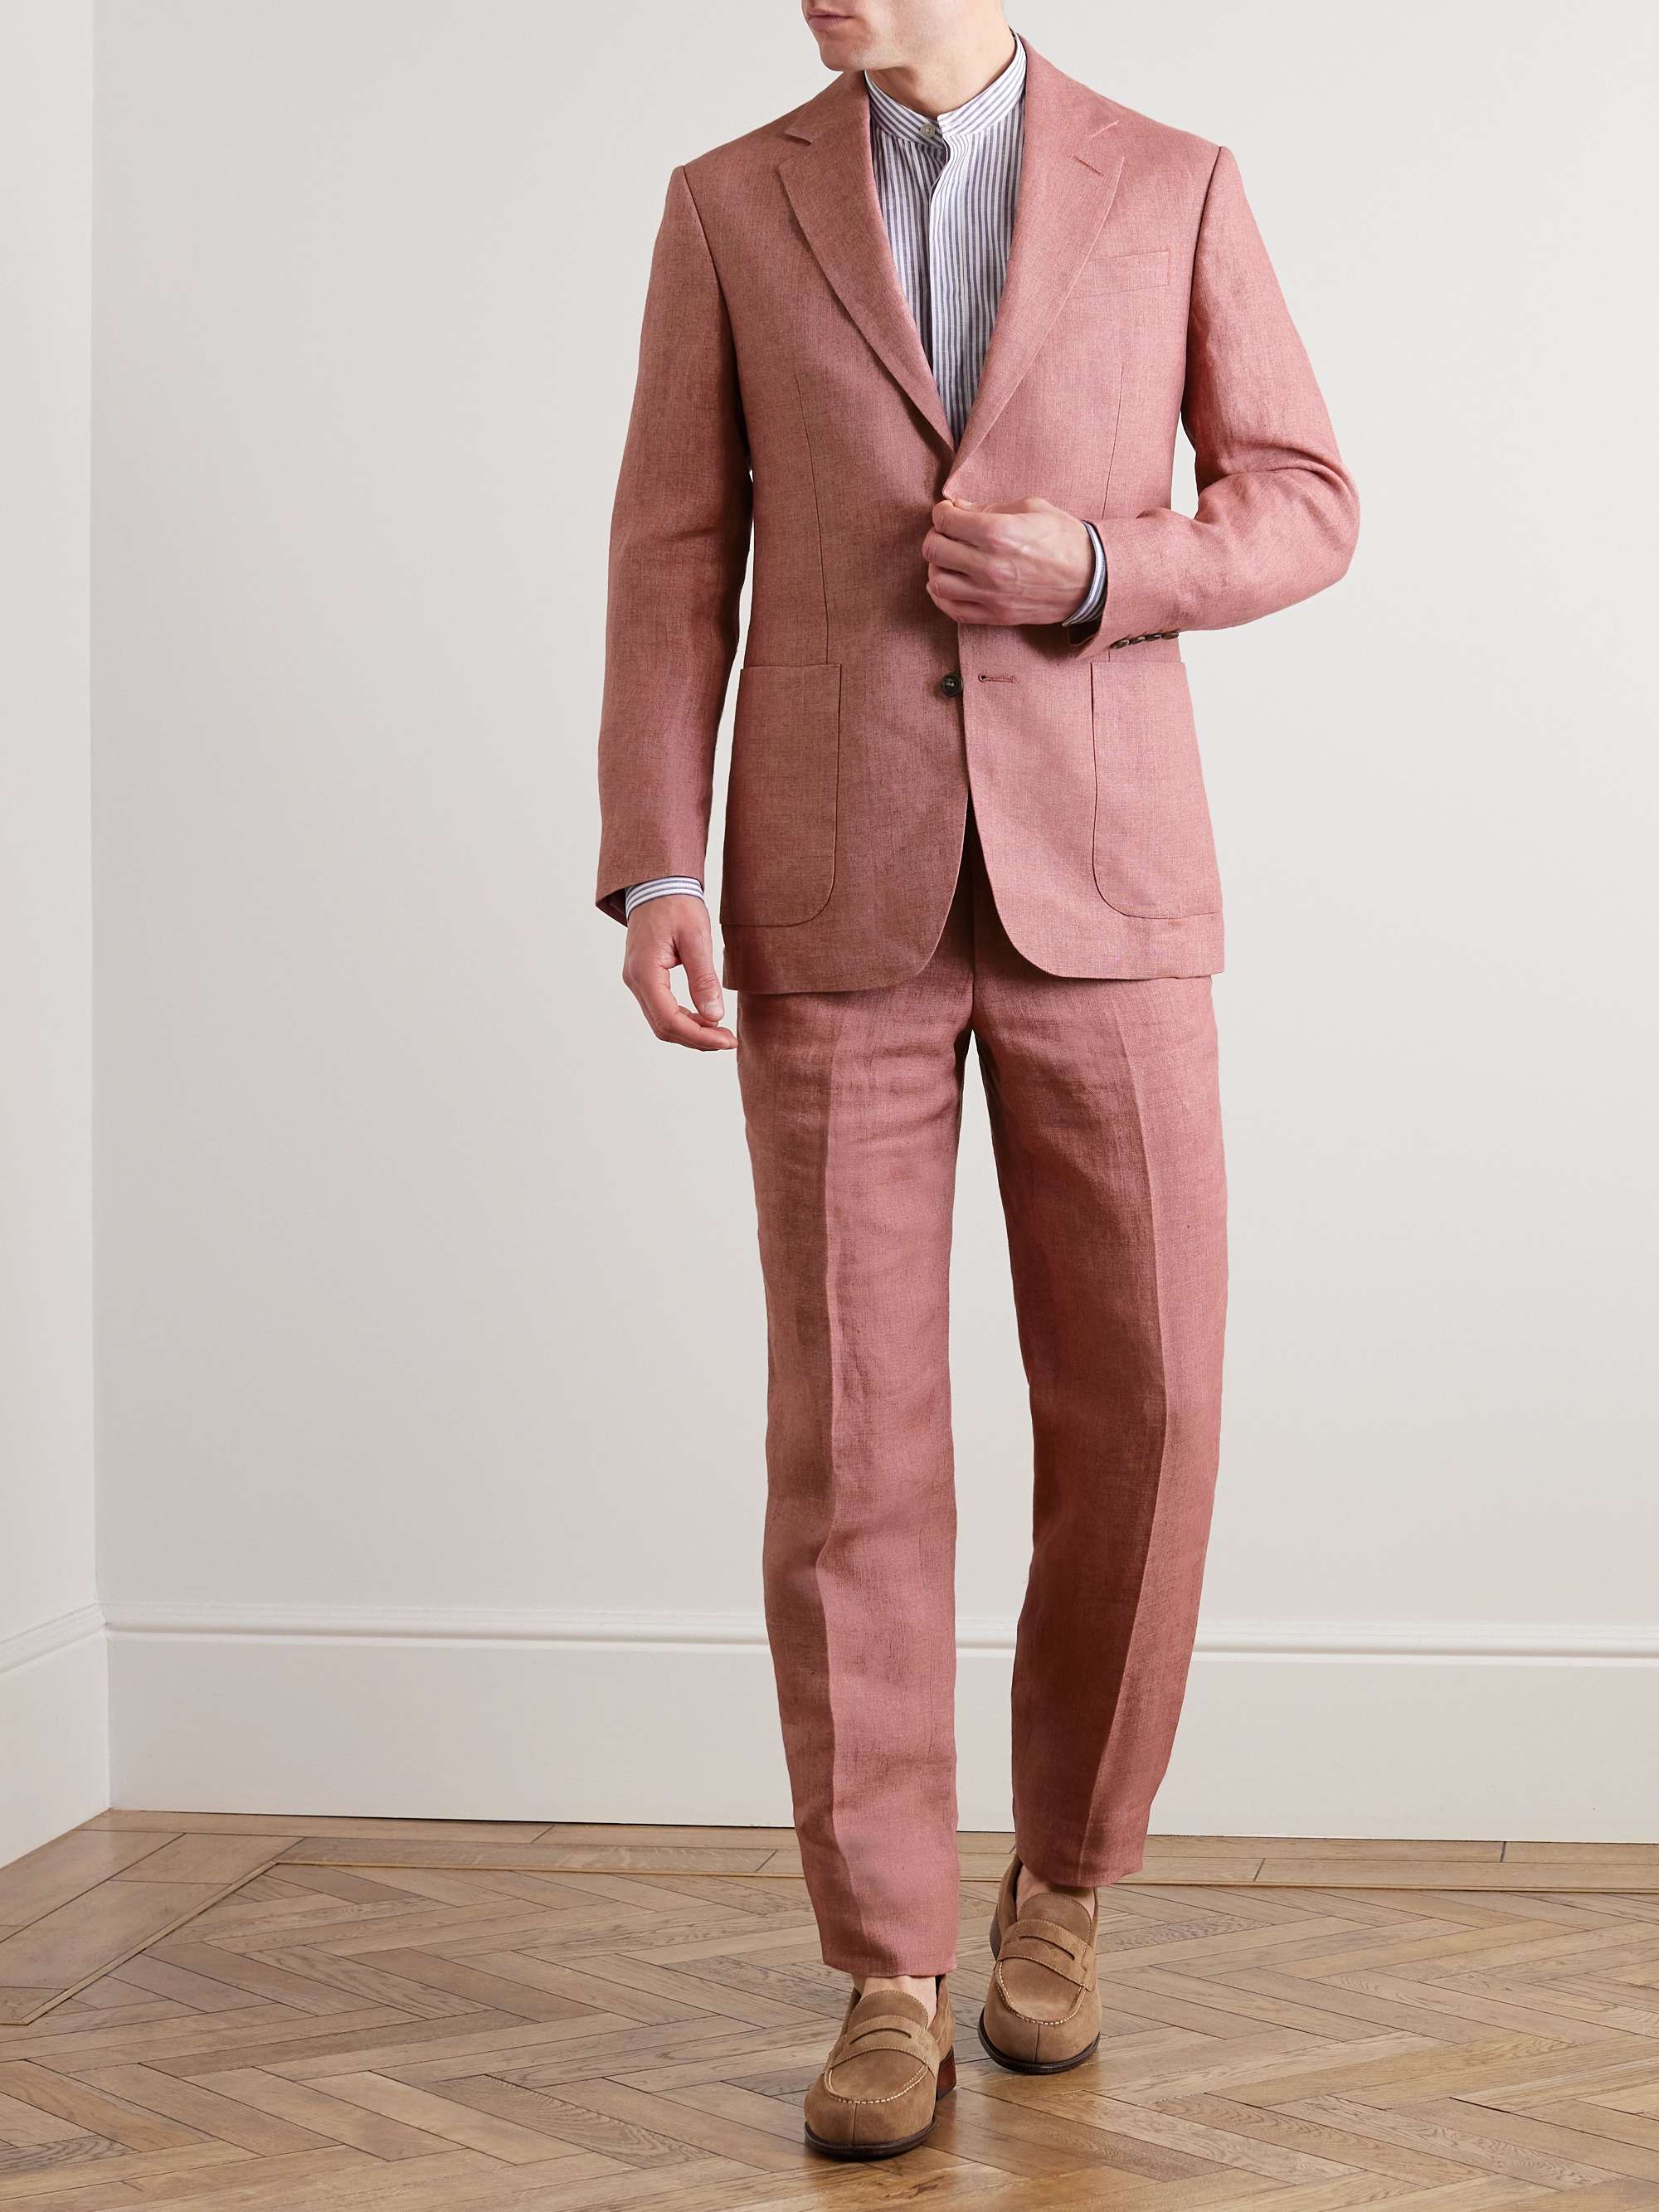 RICHARD JAMES Unstructured Linen Suit Jacket for Men | MR PORTER